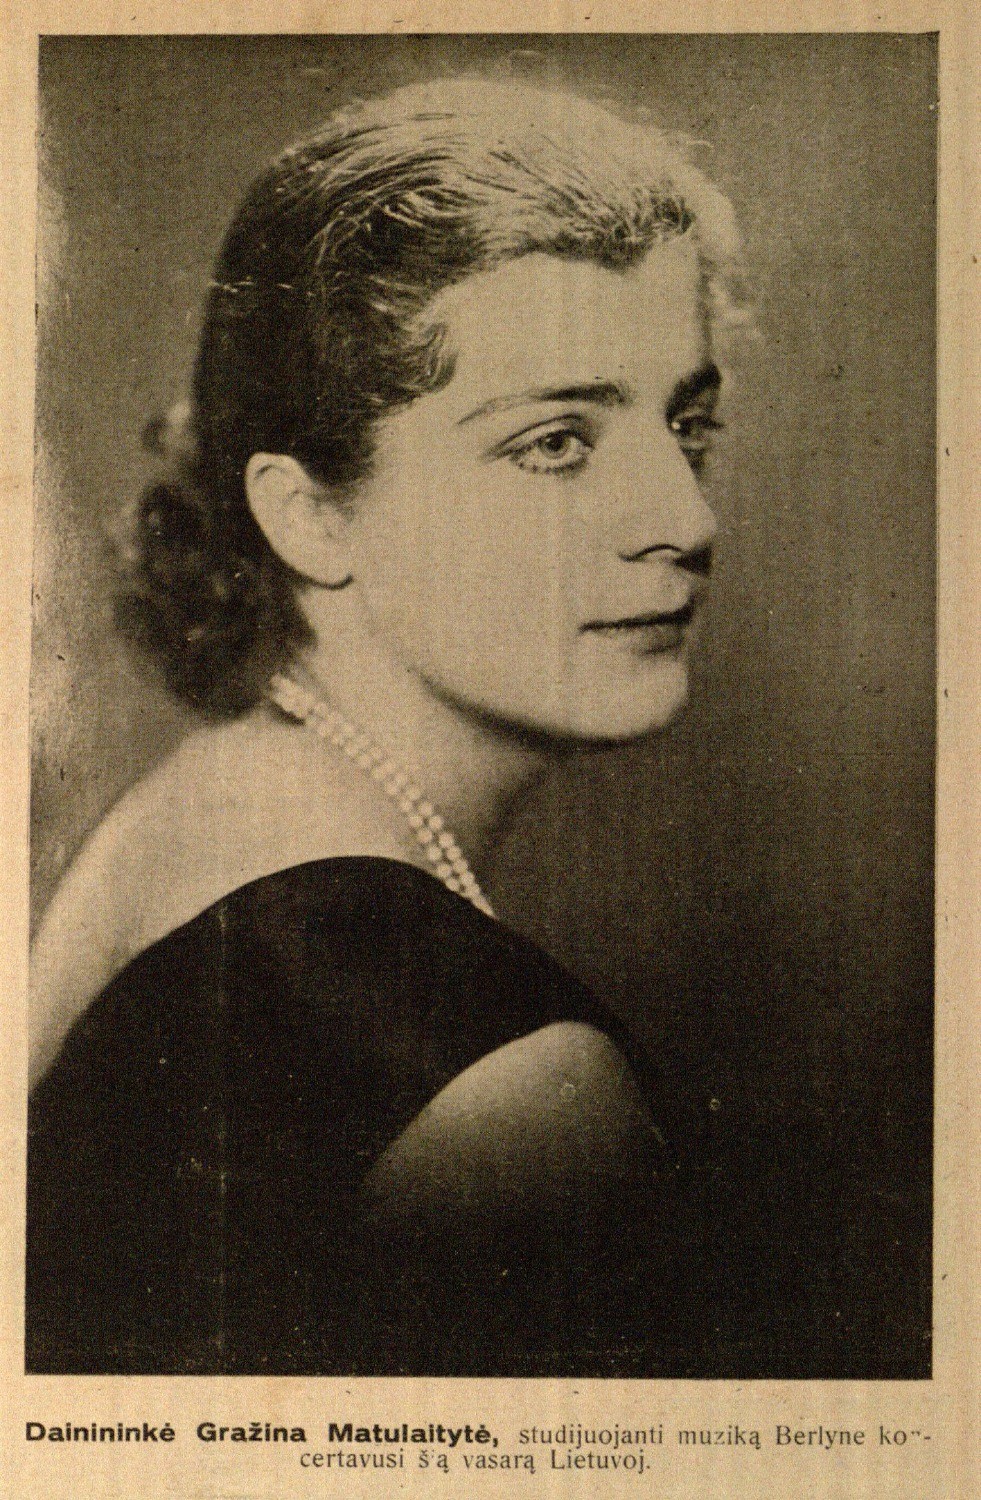 Dainininkė Gražina Matulaitytė, studijuojanti muziką Berlyne, koncertavusi šią vasarą Lietuvoje // Naujas žodis. – 1928, Nr. 14, p. 3.